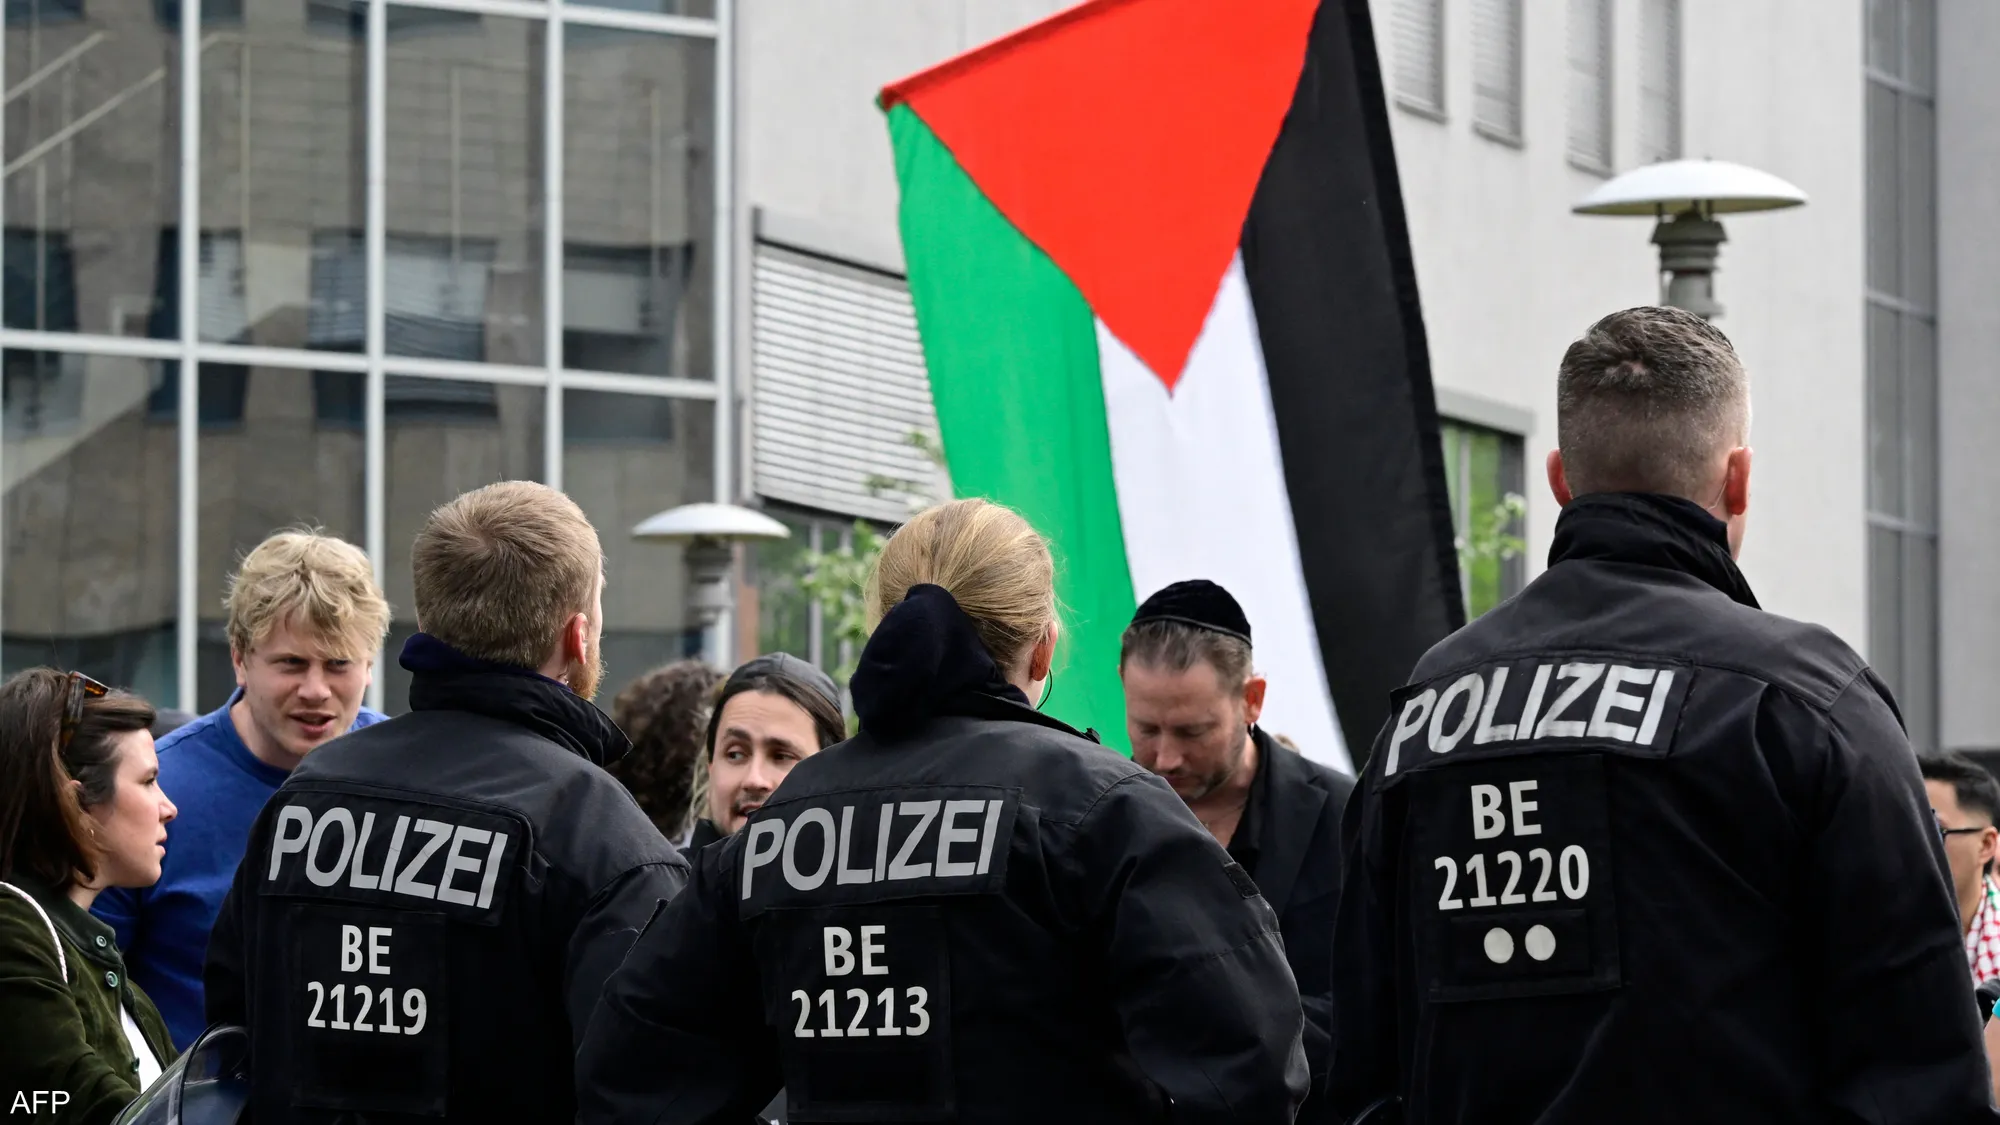 غضب في ألمانيا.. السلطات تقطع الكهرباء عن مؤتمر مؤيد للفلسطينيين